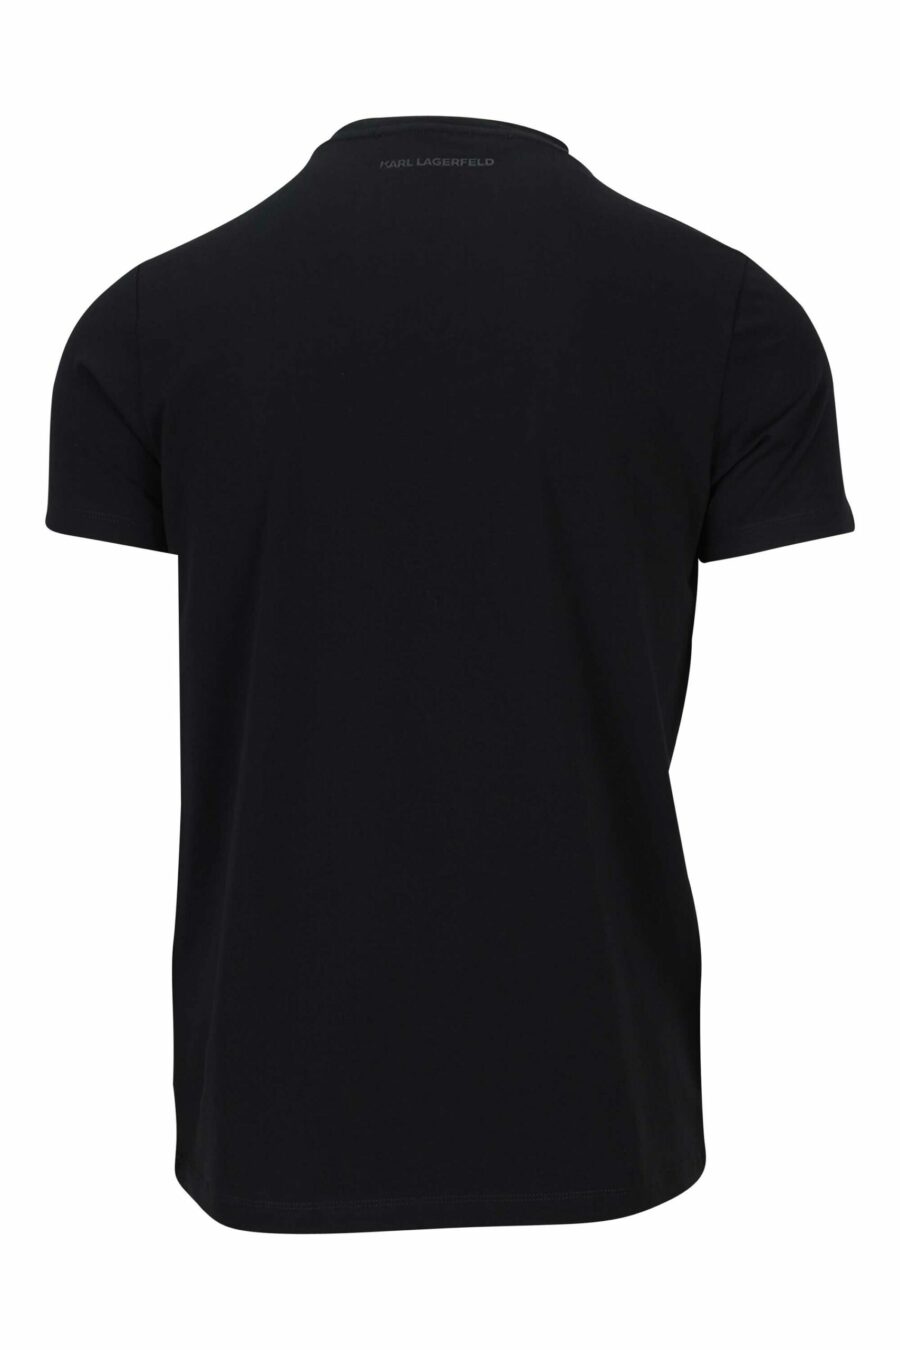 T-shirt noir avec logo centré blanc - 4062226676205 1 1 scaled